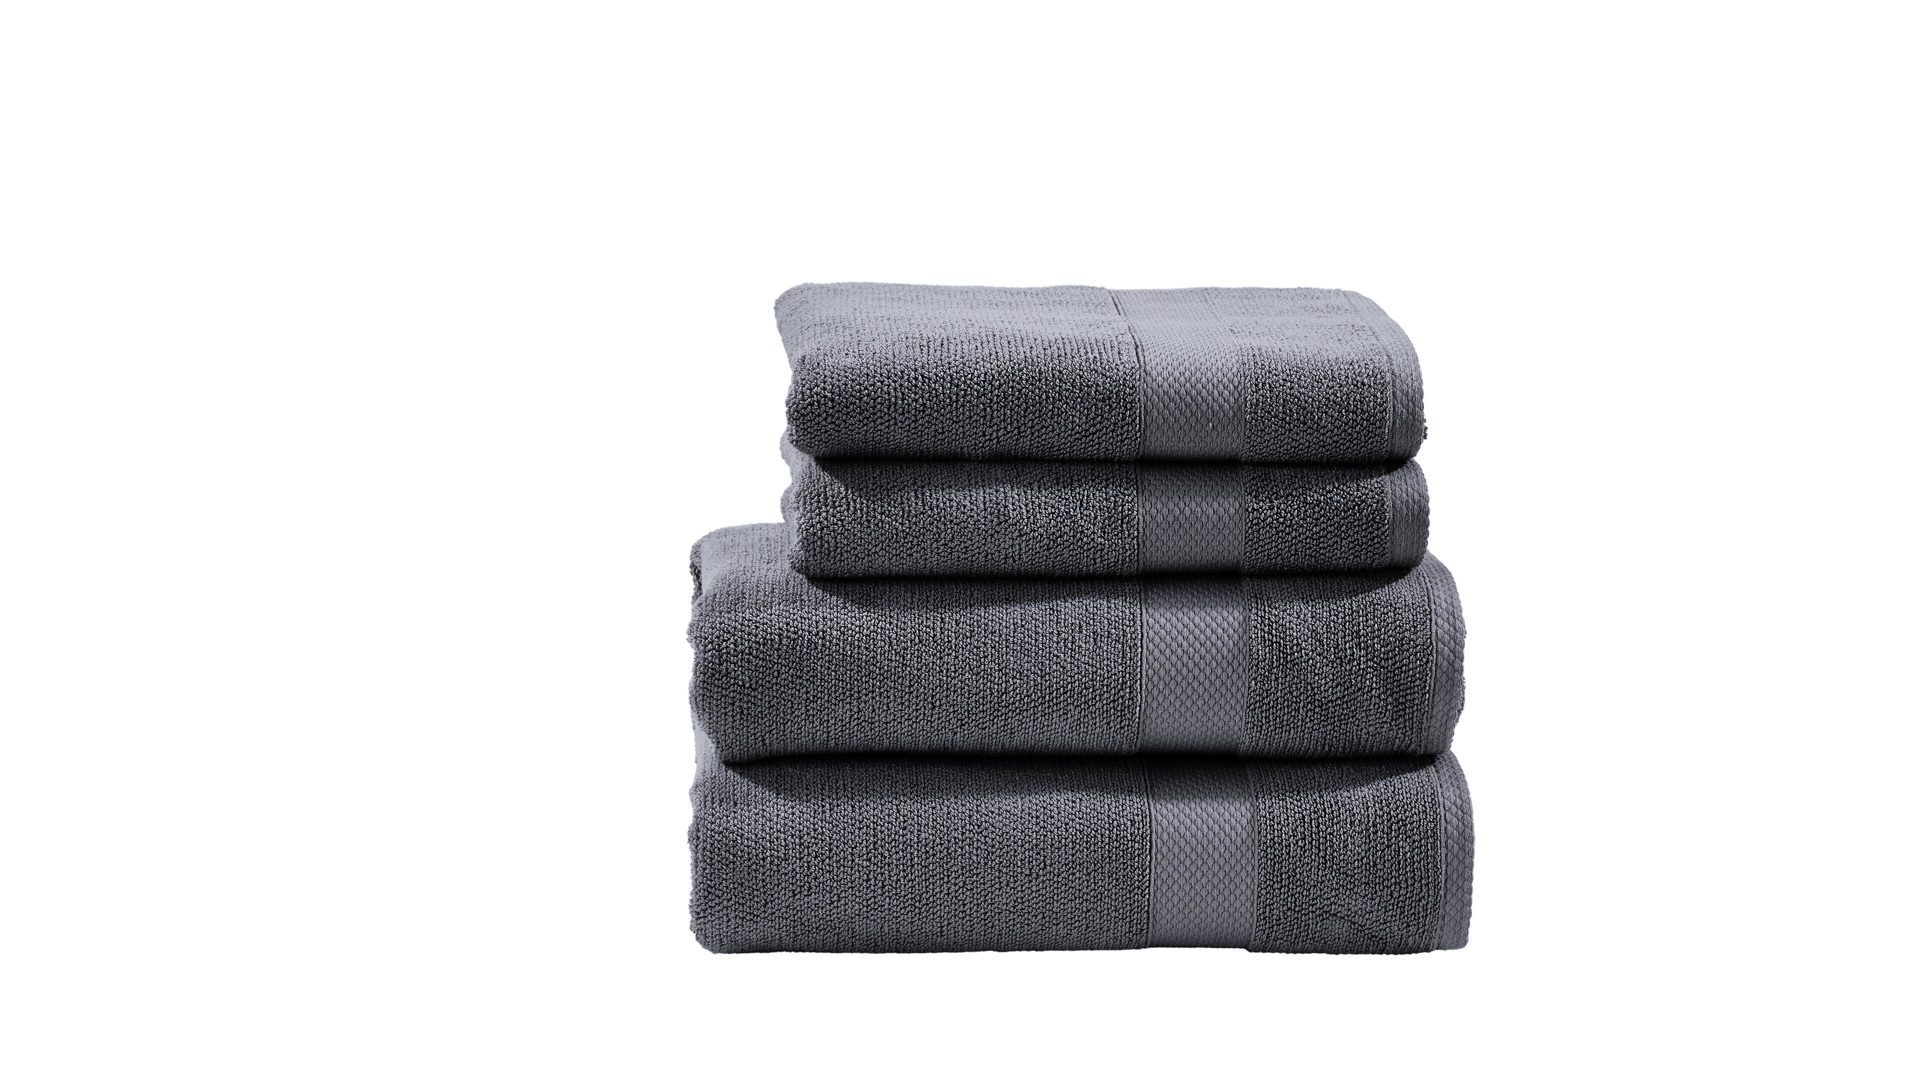 Handtuch-Set Done.® aus Stoff in Anthrazit done.® Handtuch-Set Deluxe anthrazitfarbene Baumwolle – vierteilig